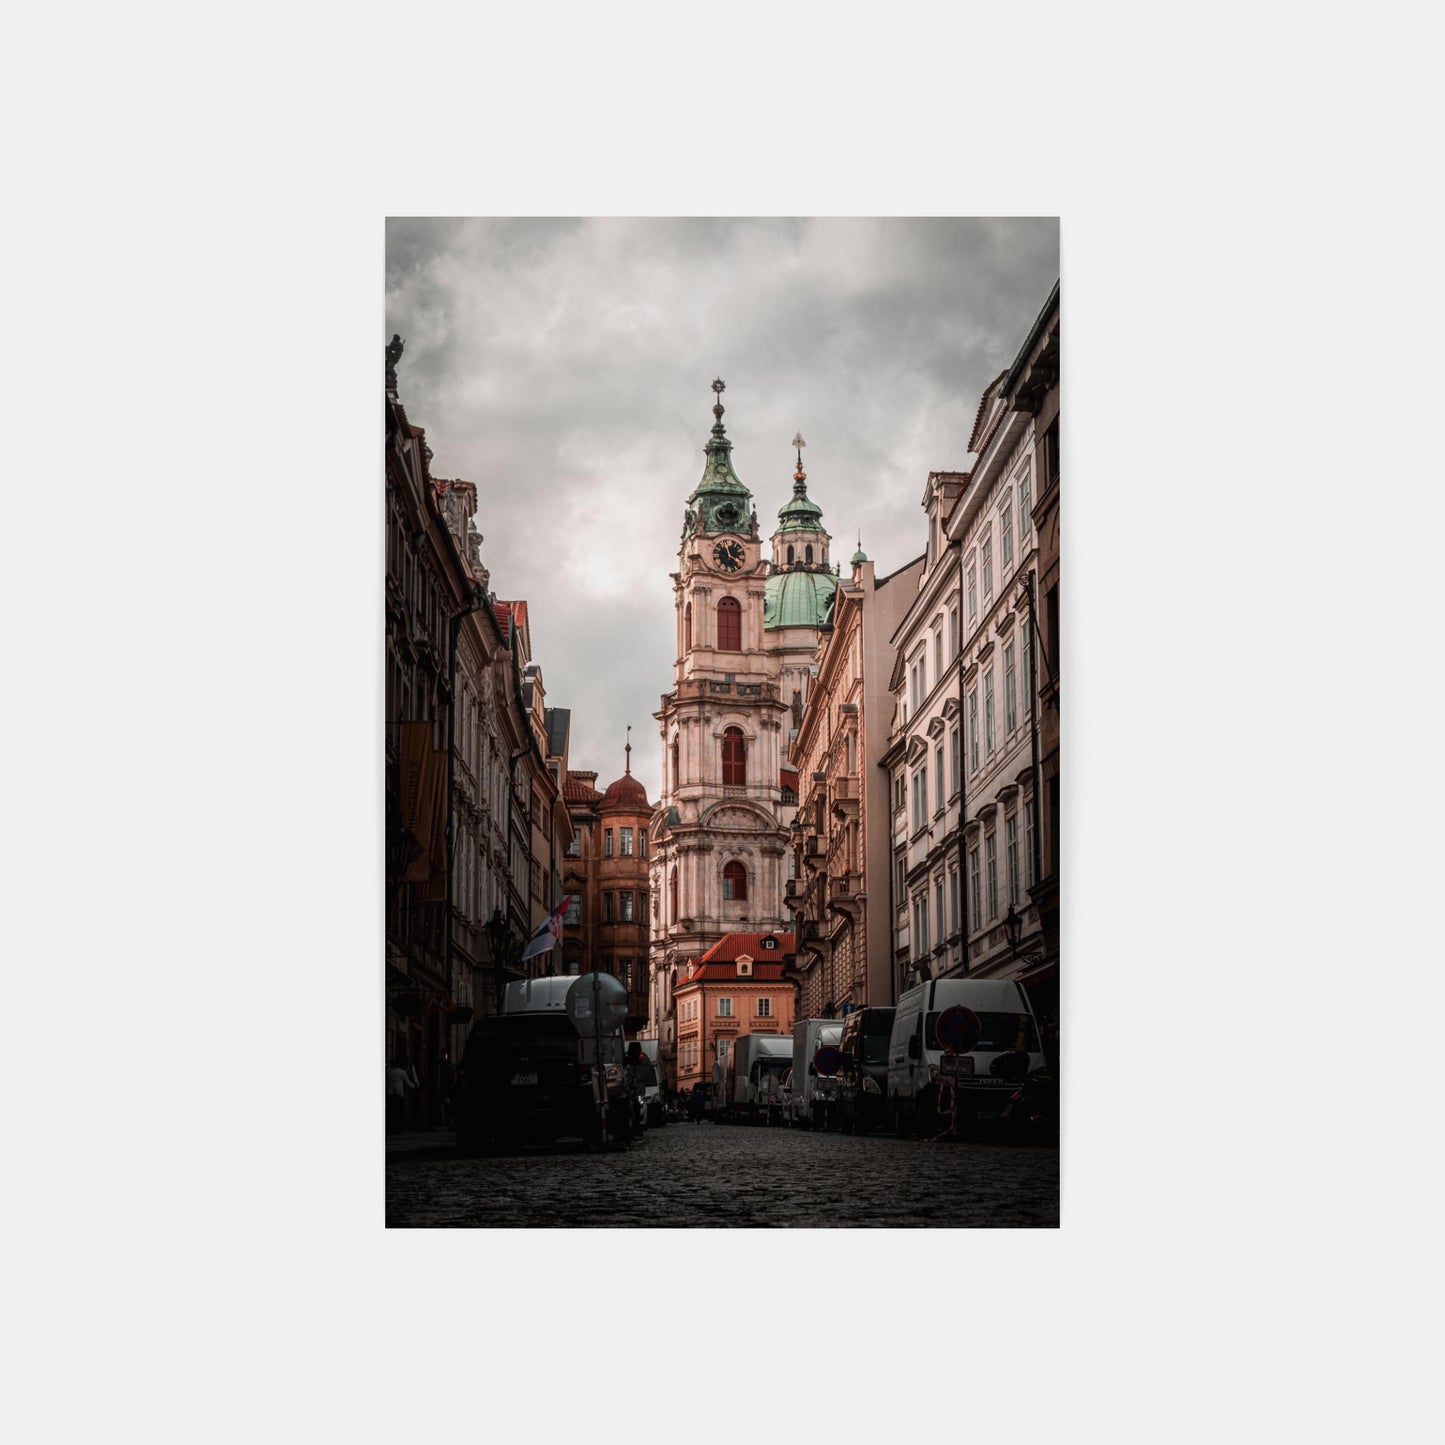 Strašidelná architektura – kostel sv. Mikuláše Praha, CZ, 2020